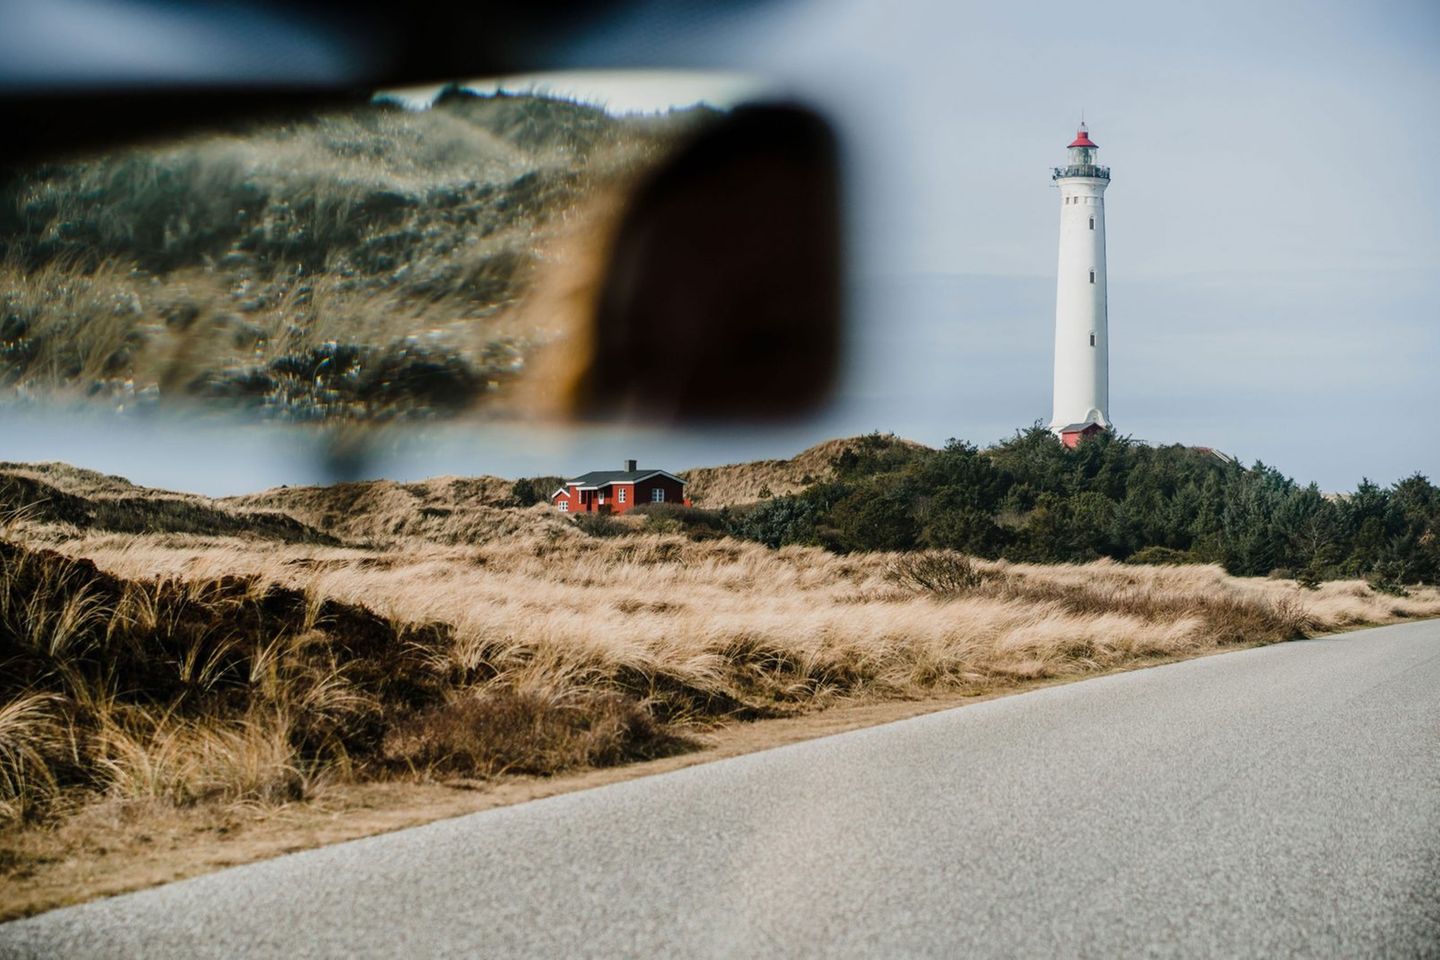 Blick aus der Frontscheibe eines Autos auf den Leuchtturm Lyngvig